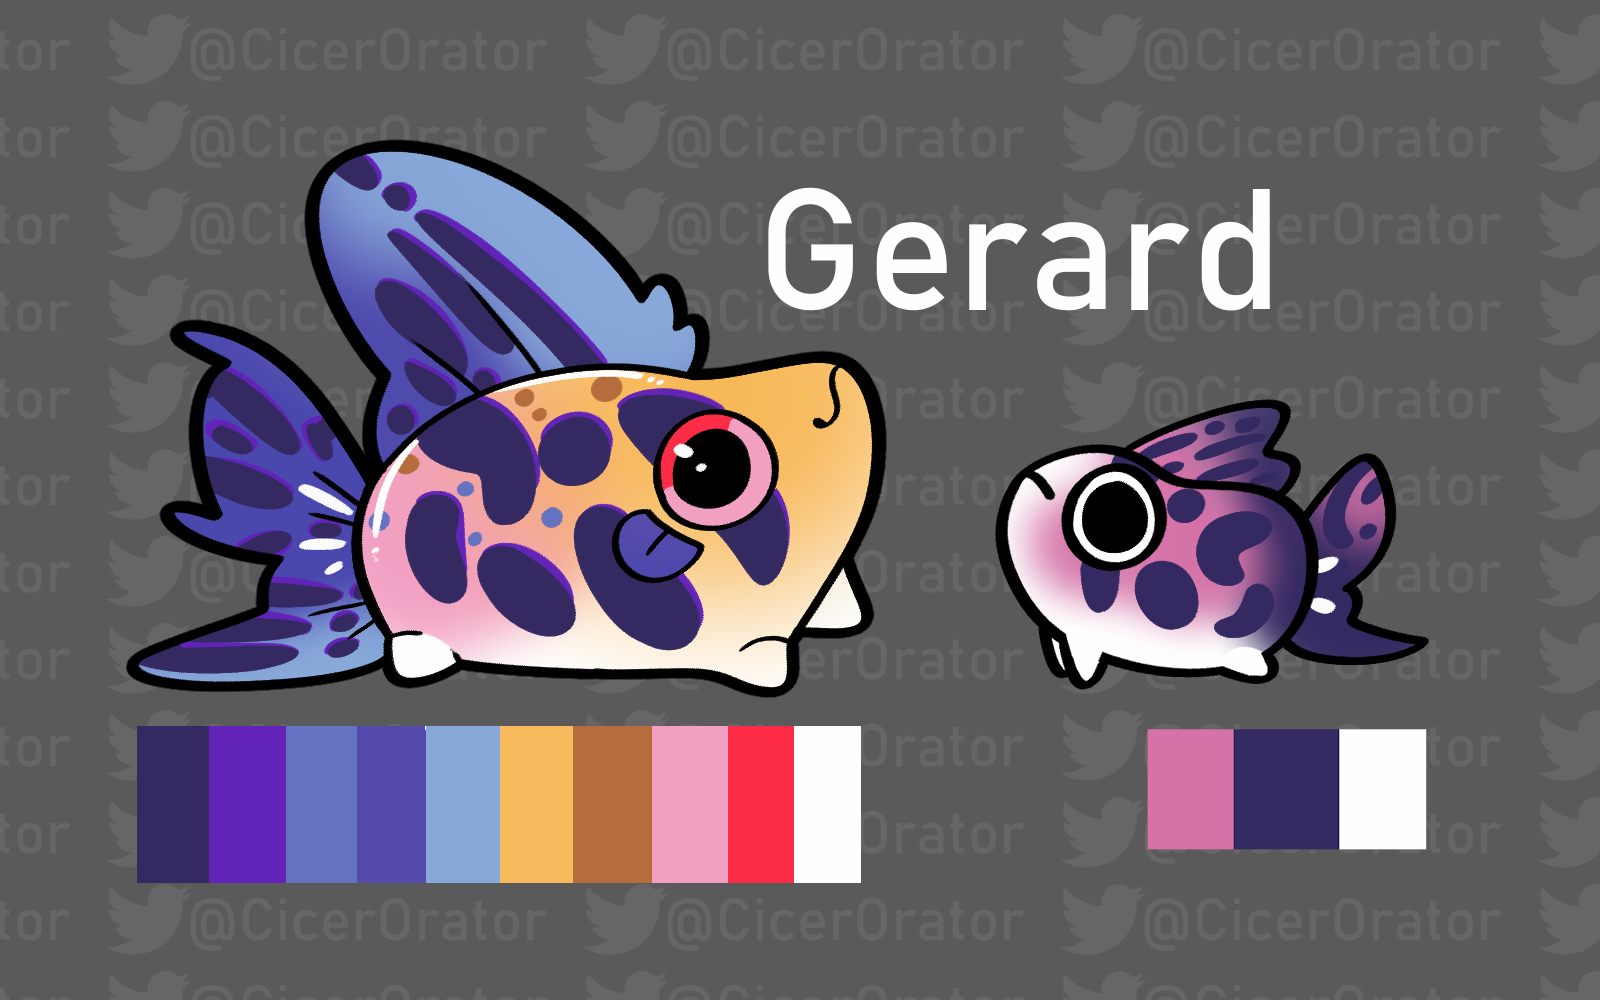 Bet-180: Gerard